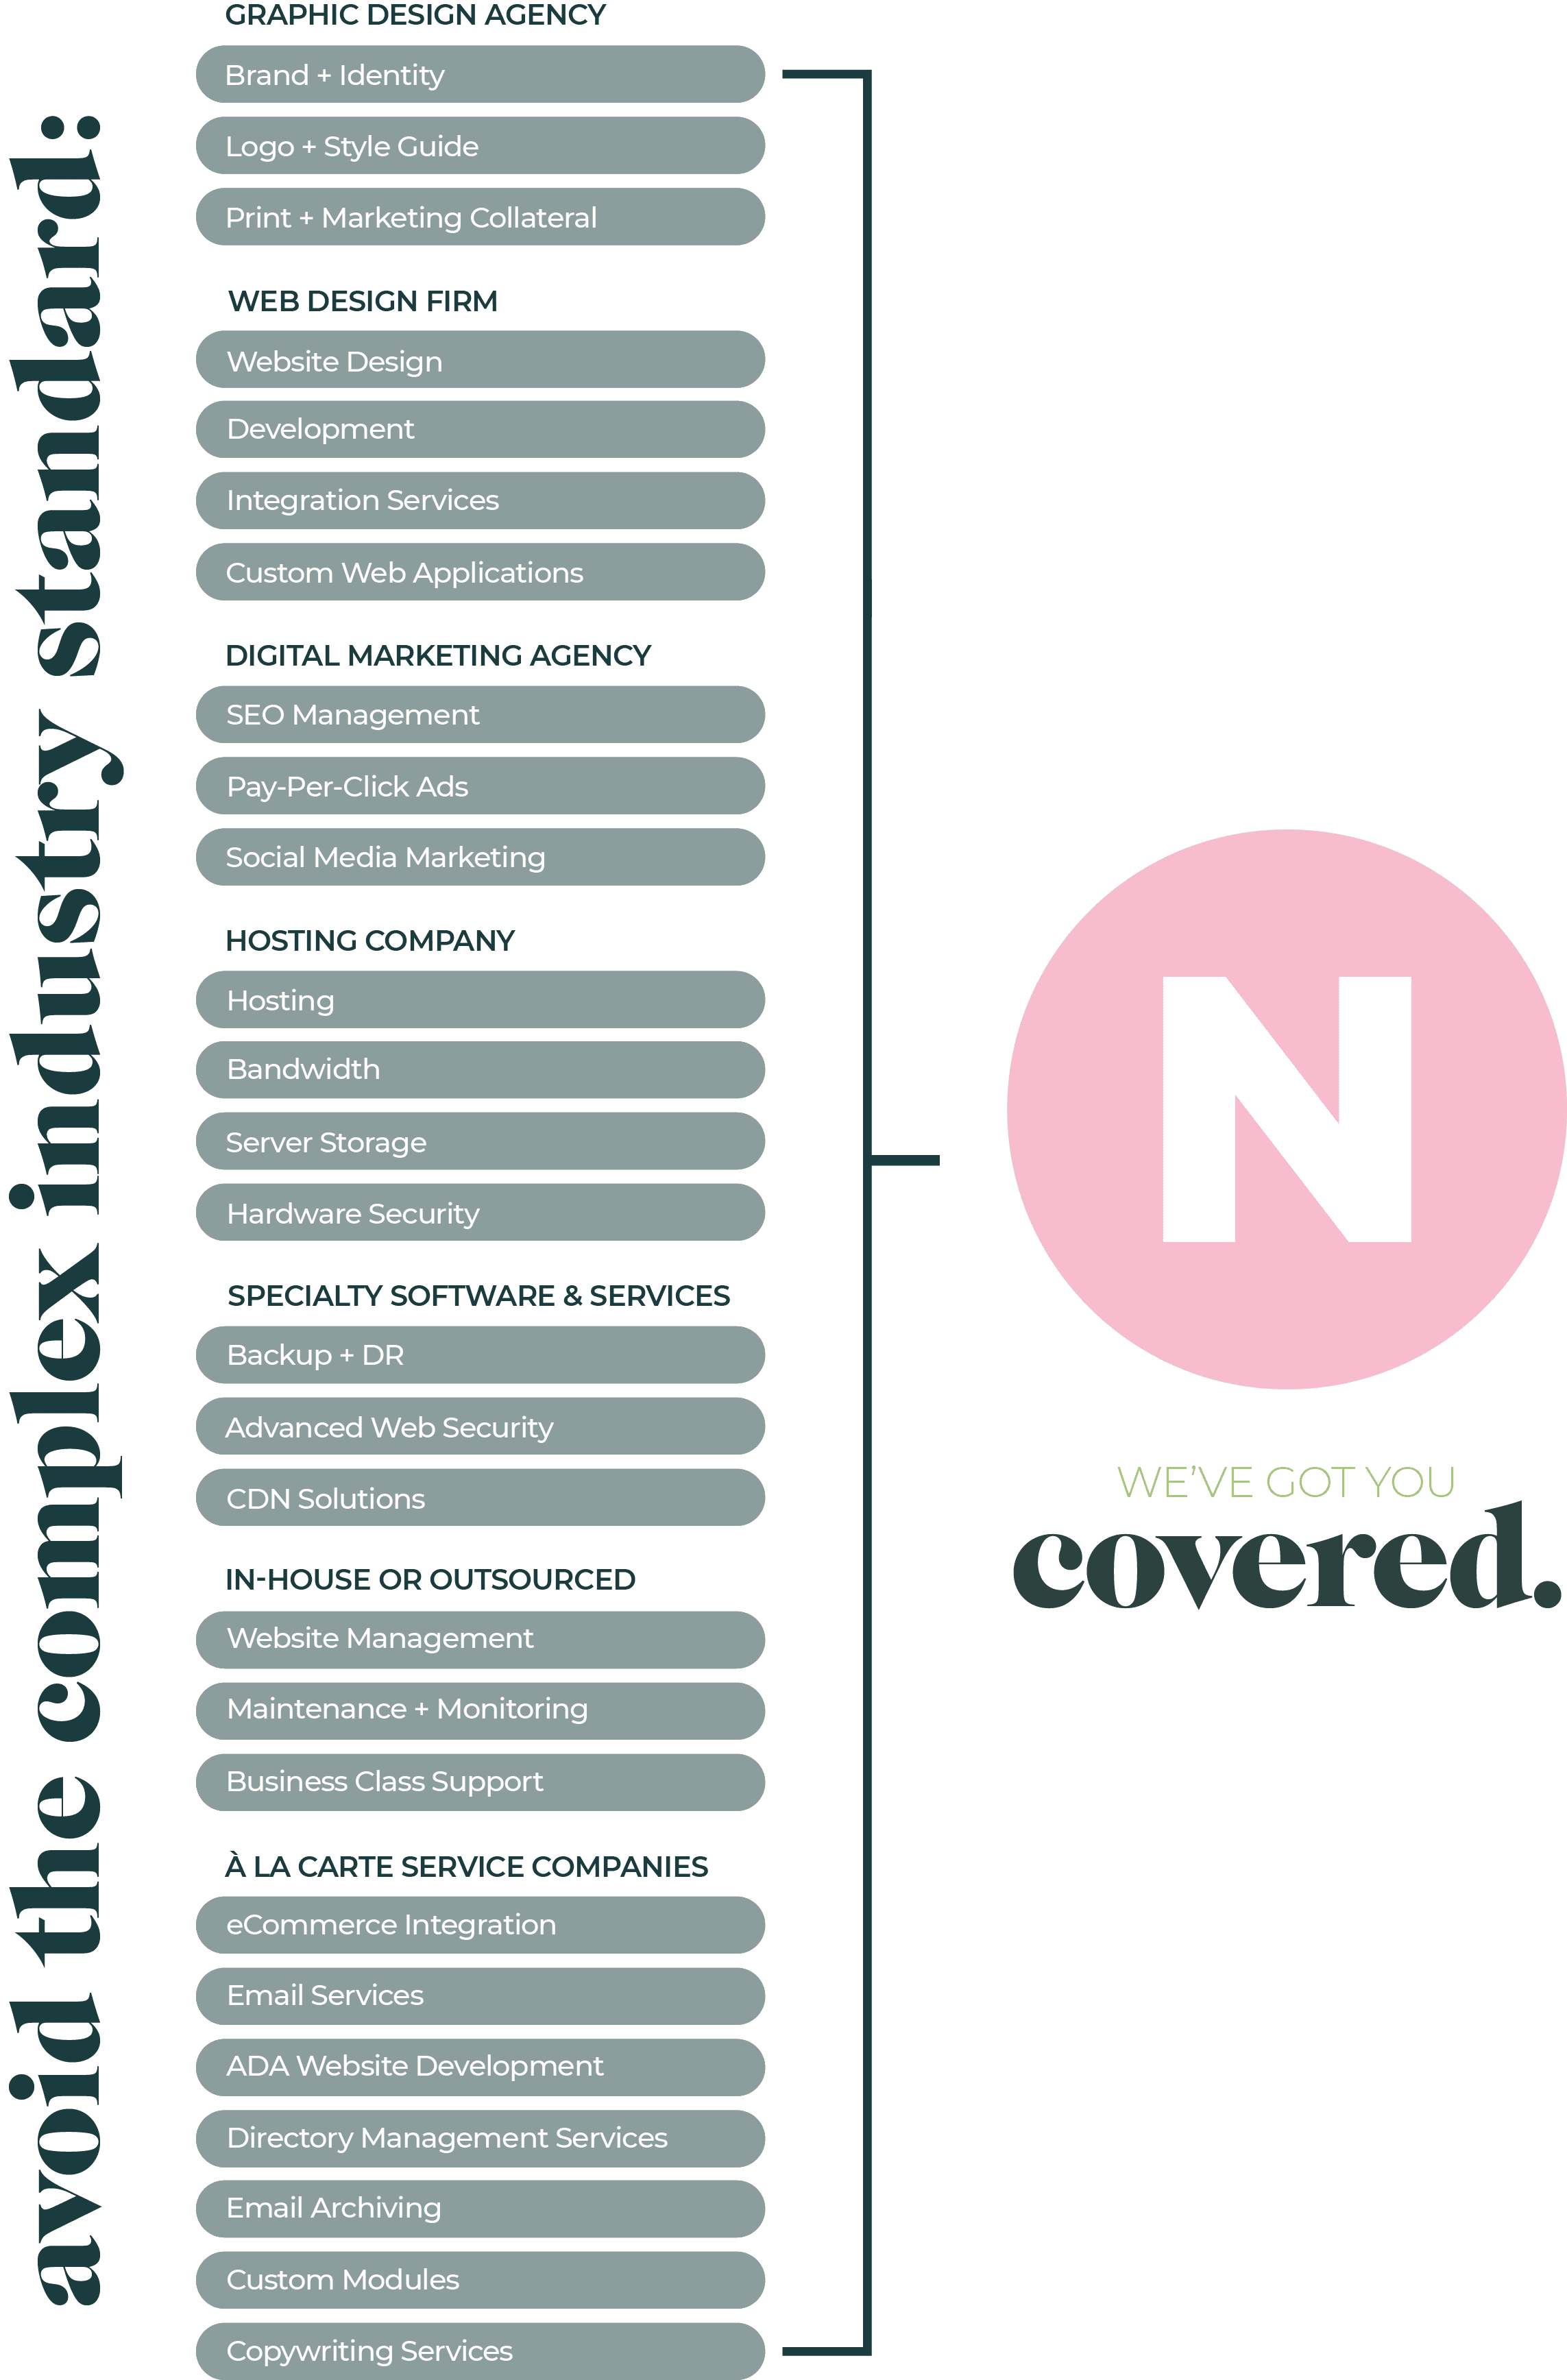 Branded - Nashville Web Design and Development